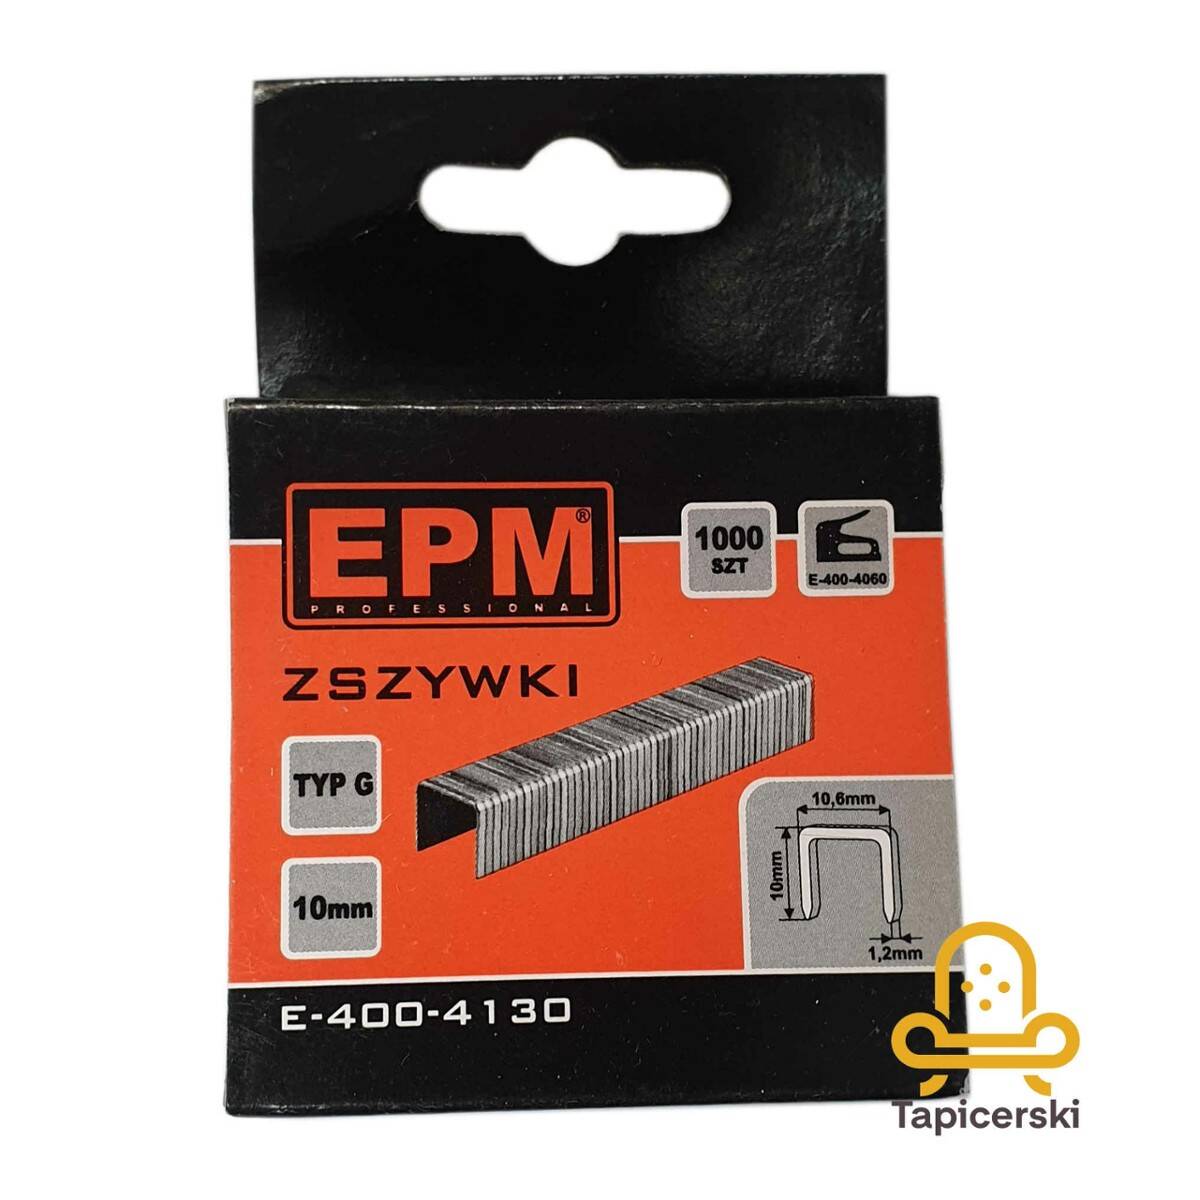 Zszywki Typ G 10 mm EPM [1000 sztuk ] Rozmiar: szer. 10.6 mm x gr. 1.2 mm E-400-4130 